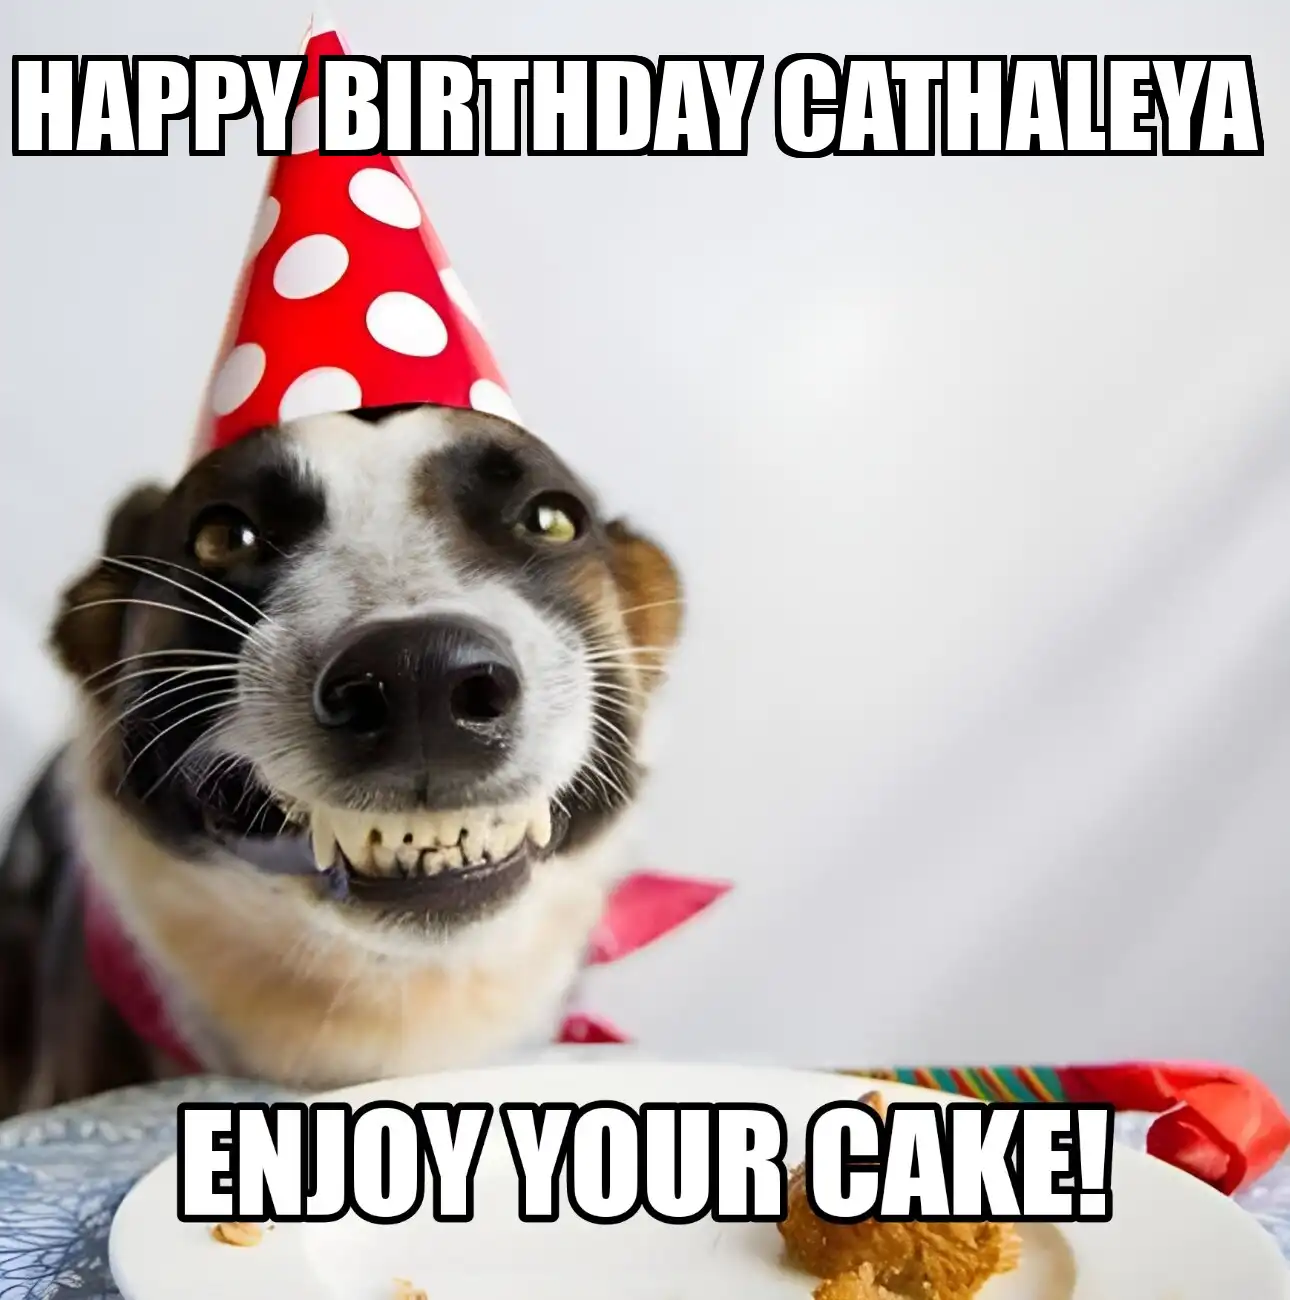 Happy Birthday Cathaleya Enjoy Your Cake Dog Meme